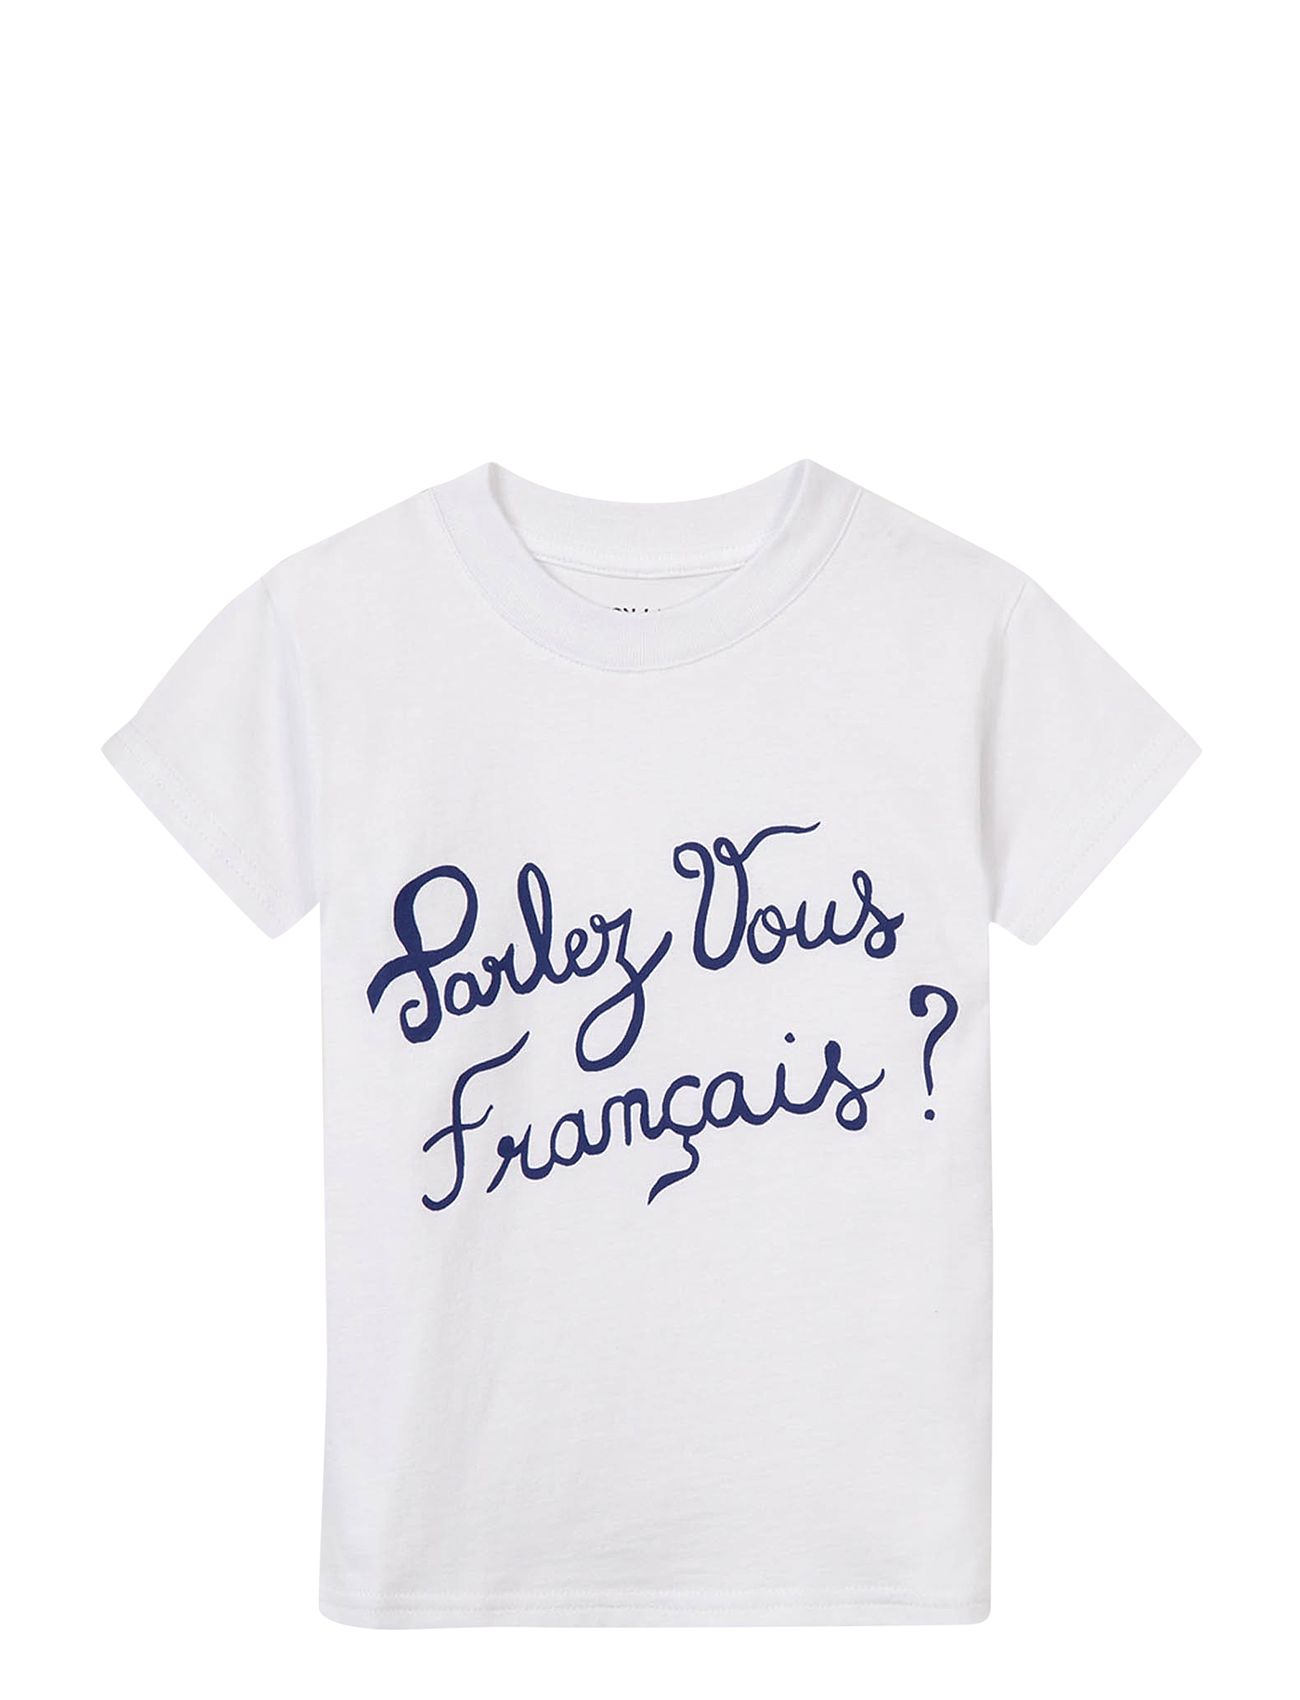 Leon Parlez Vous Francais Tops T-shirts Short-sleeved White Maison Labiche Paris